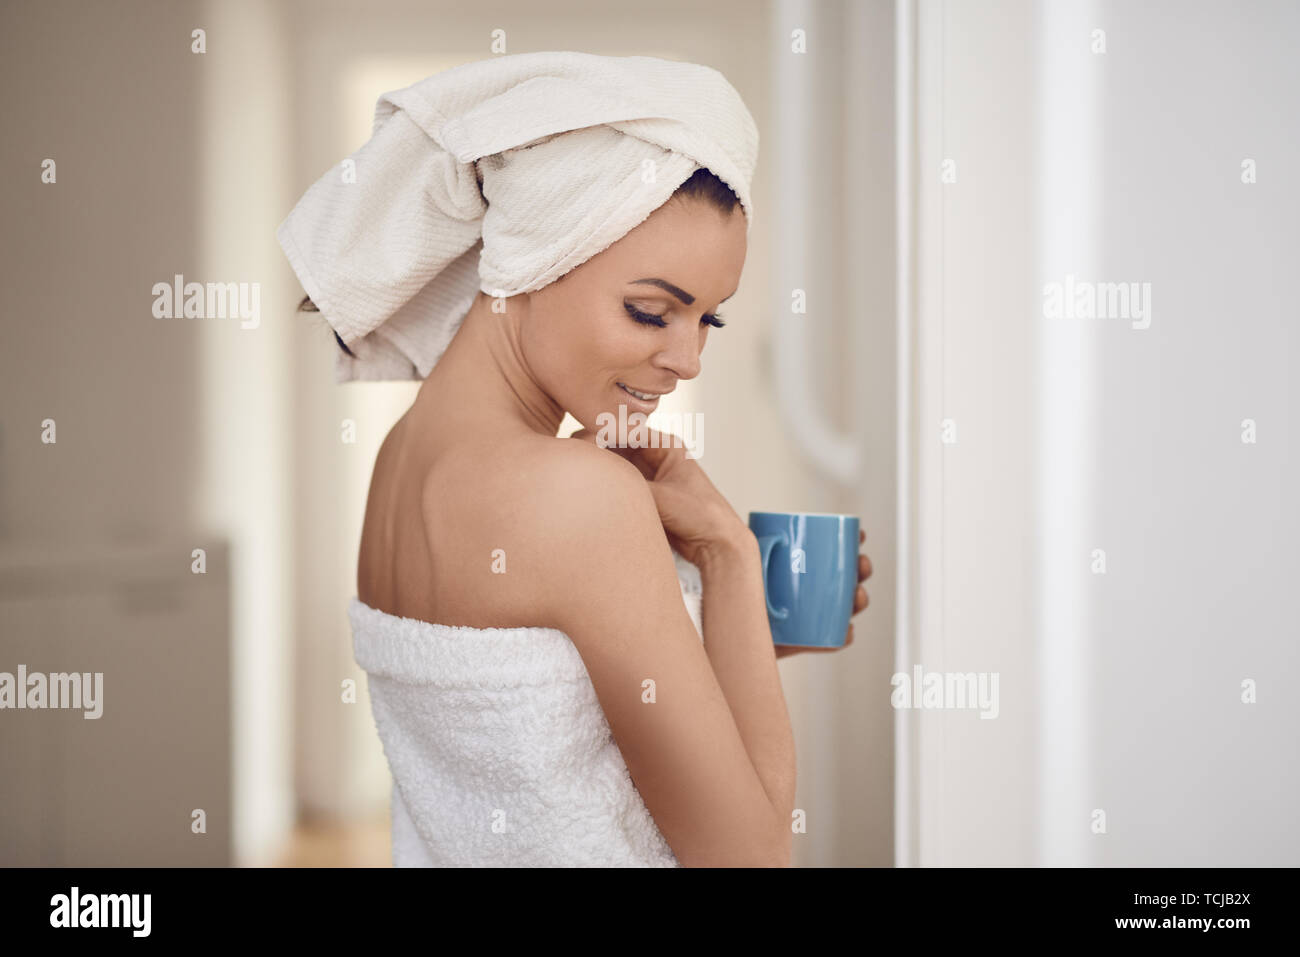 Hübsche Frau mittleren Alters in frische, saubere, weiße Handtücher um ihren Kopf und Körper gegen die Innenwand mit einer Tasse trinken in einem Con schiefen gewickelt Stockfoto